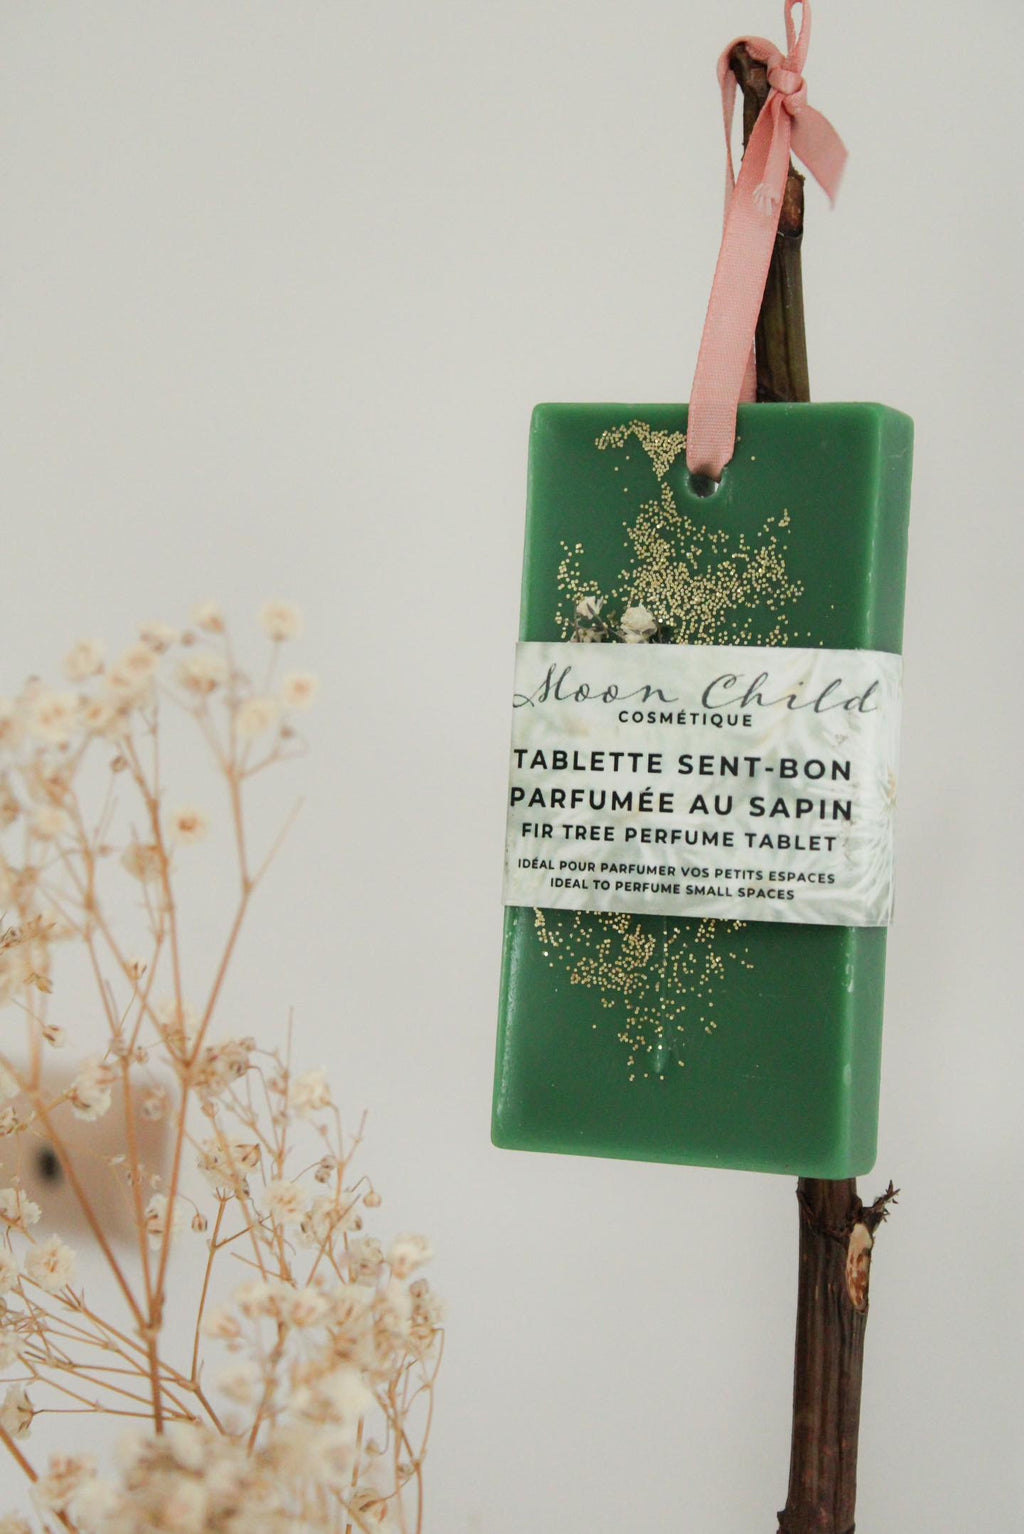 Tablette Sent Bon | Parfumer Vos Espaces | Sapin | IMPARFAITE